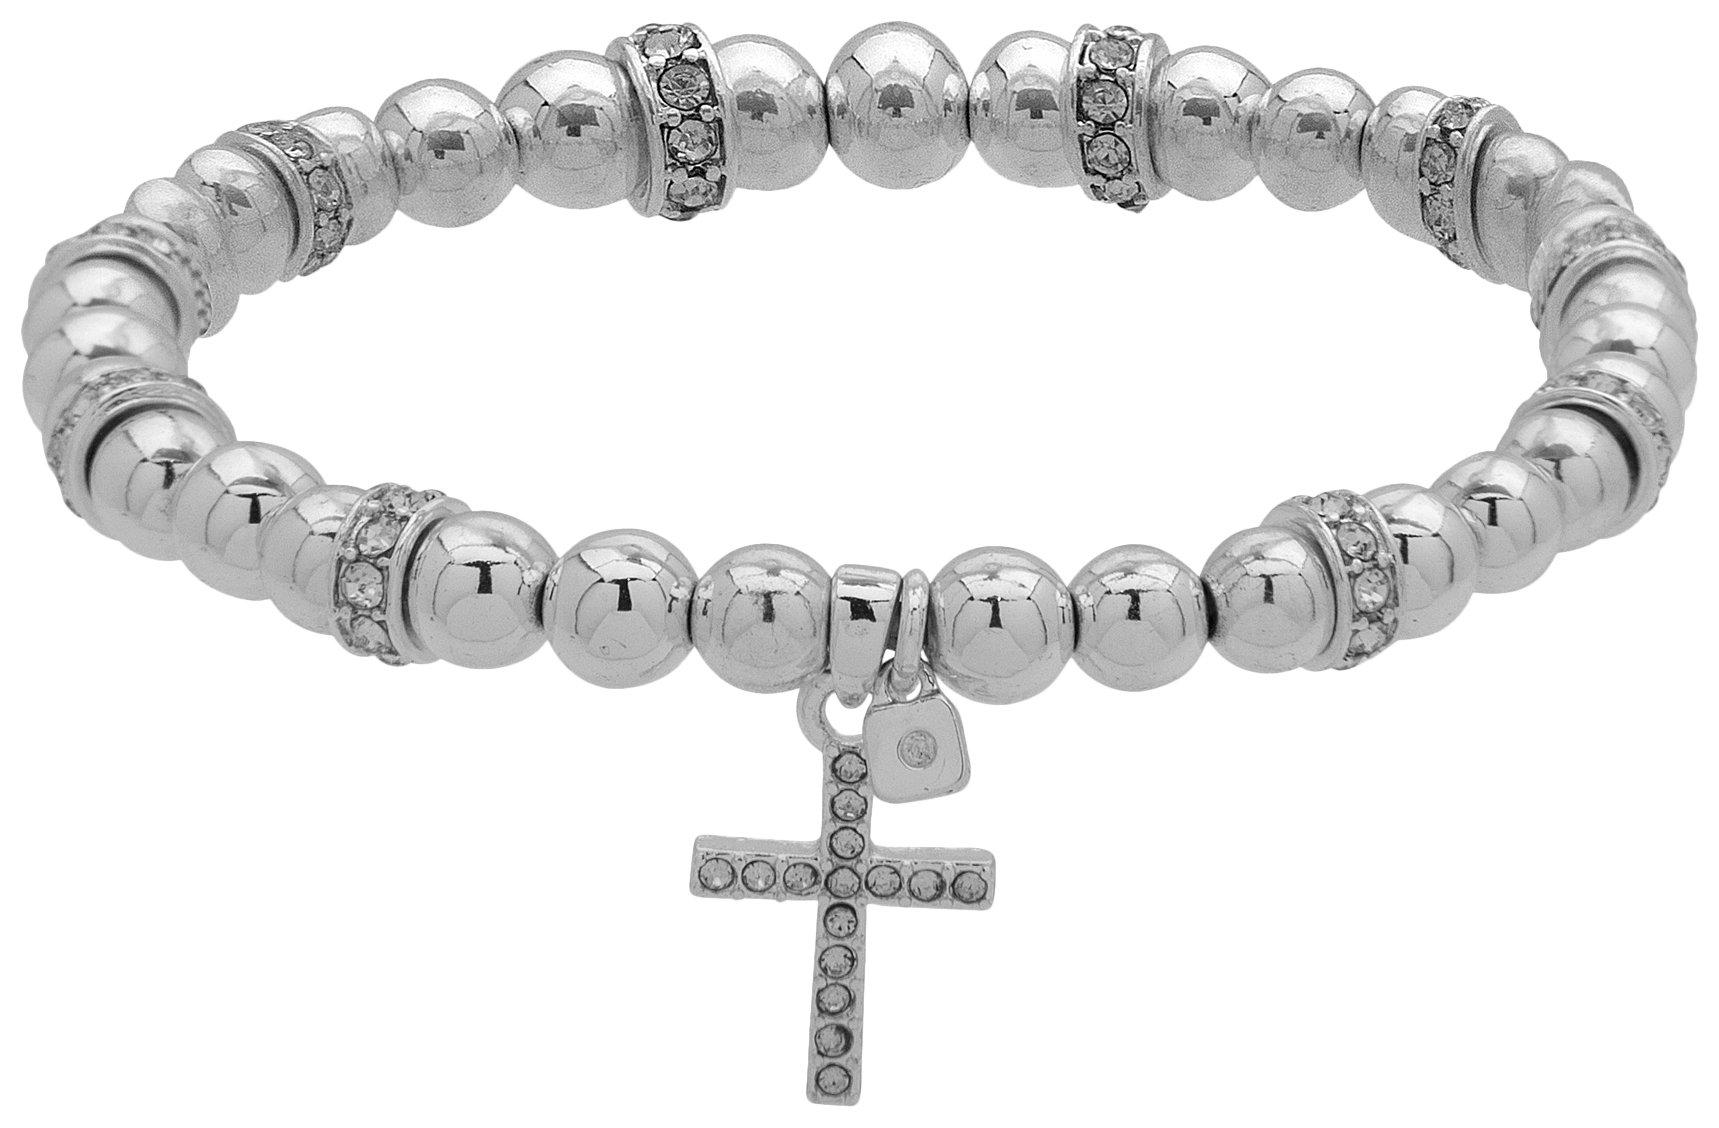 Pave Cross Bead Stretch Bracelet